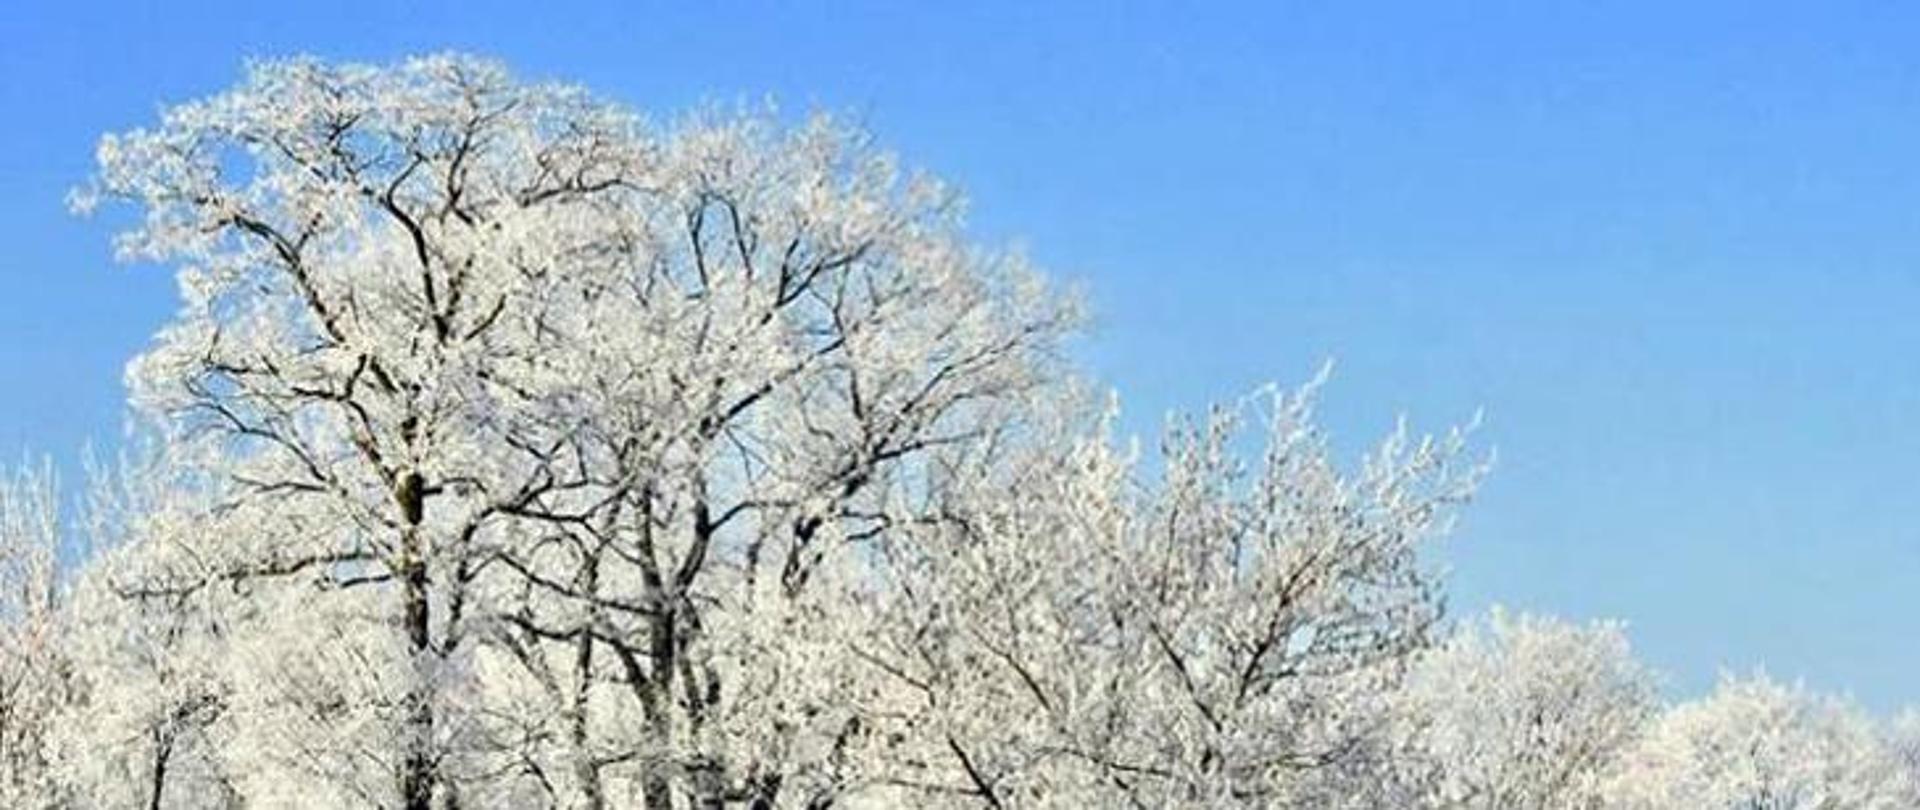 Zdjęcie przedstawia wierzchołki drzew bez liści w pogodny dzień. Oprócz najgrubszych konarów wszystkie gałęzie pokryte są szronem. W tle błękitne niebo.